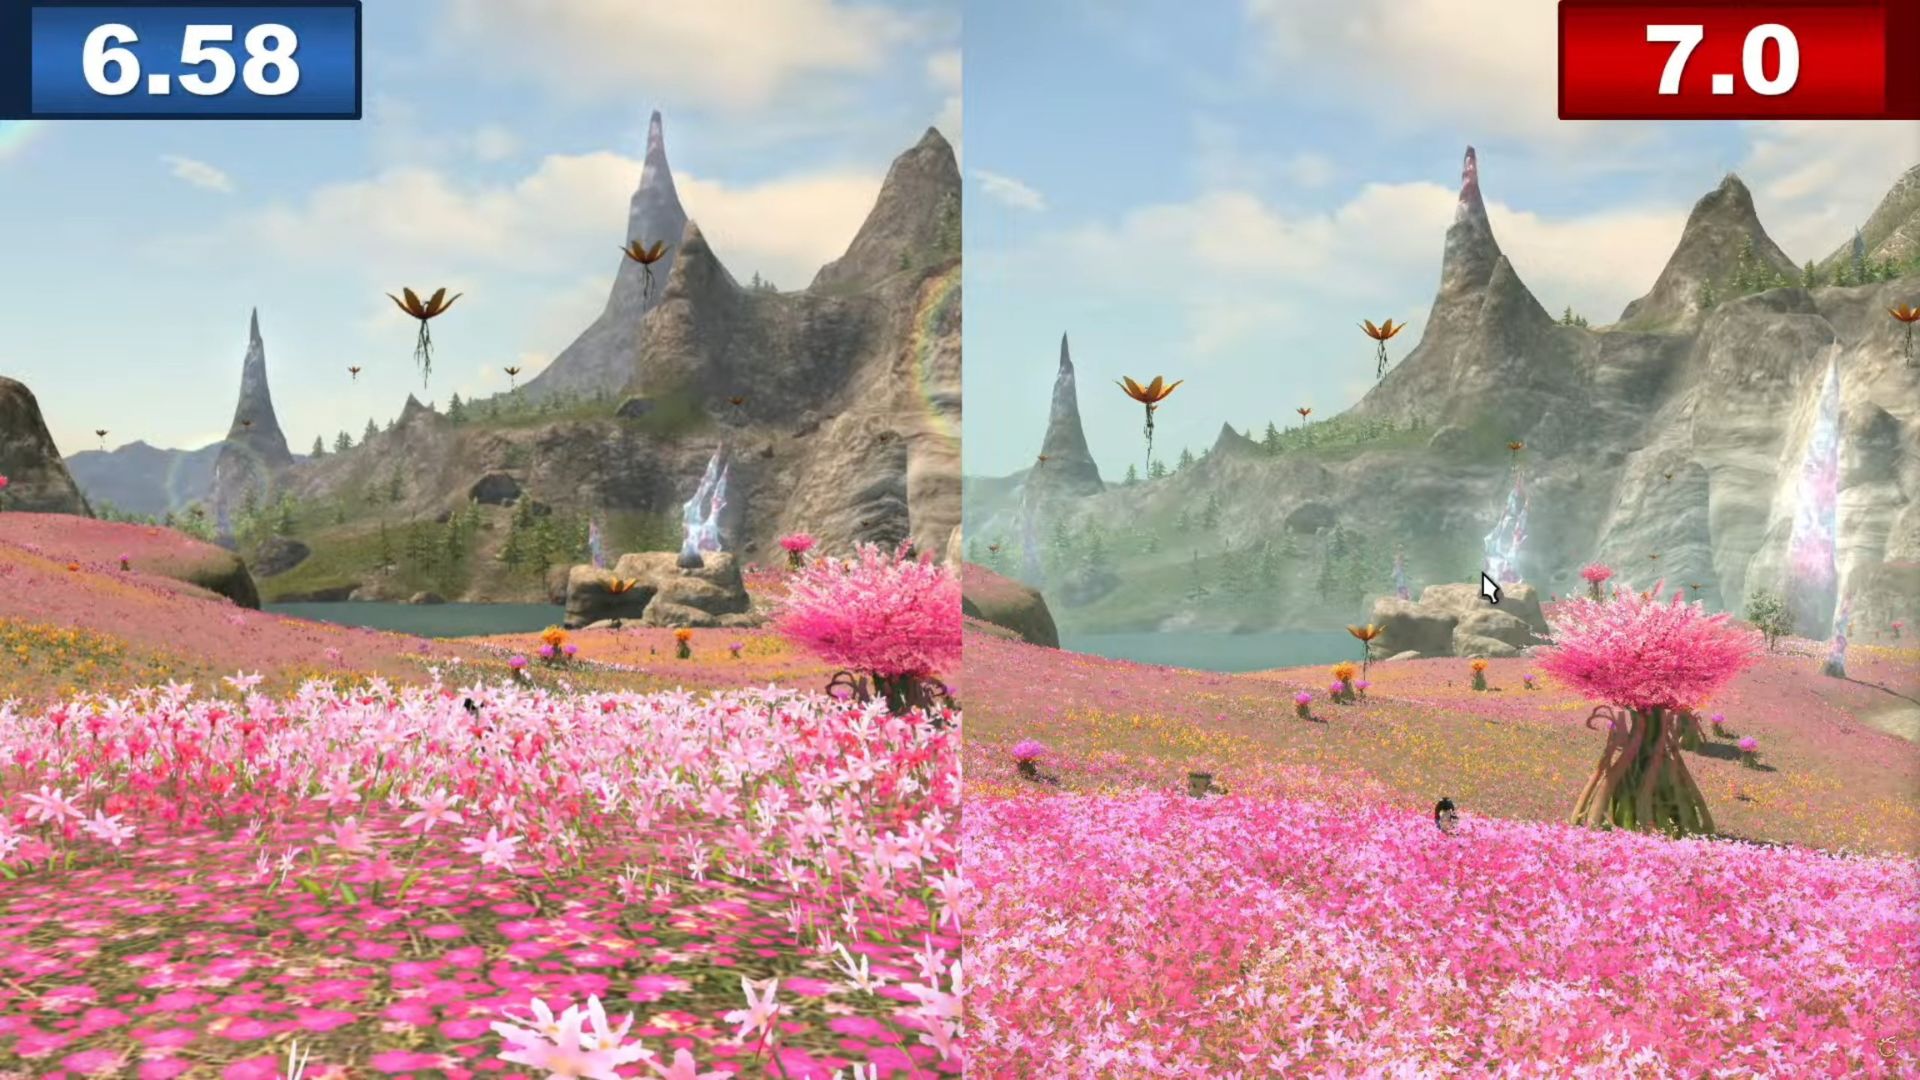 Benchmark Final Fantasy 14 Dawntrail: dos tomas de campos de flores rosas, la de la derecha es de mejor calidad que la de la izquierda